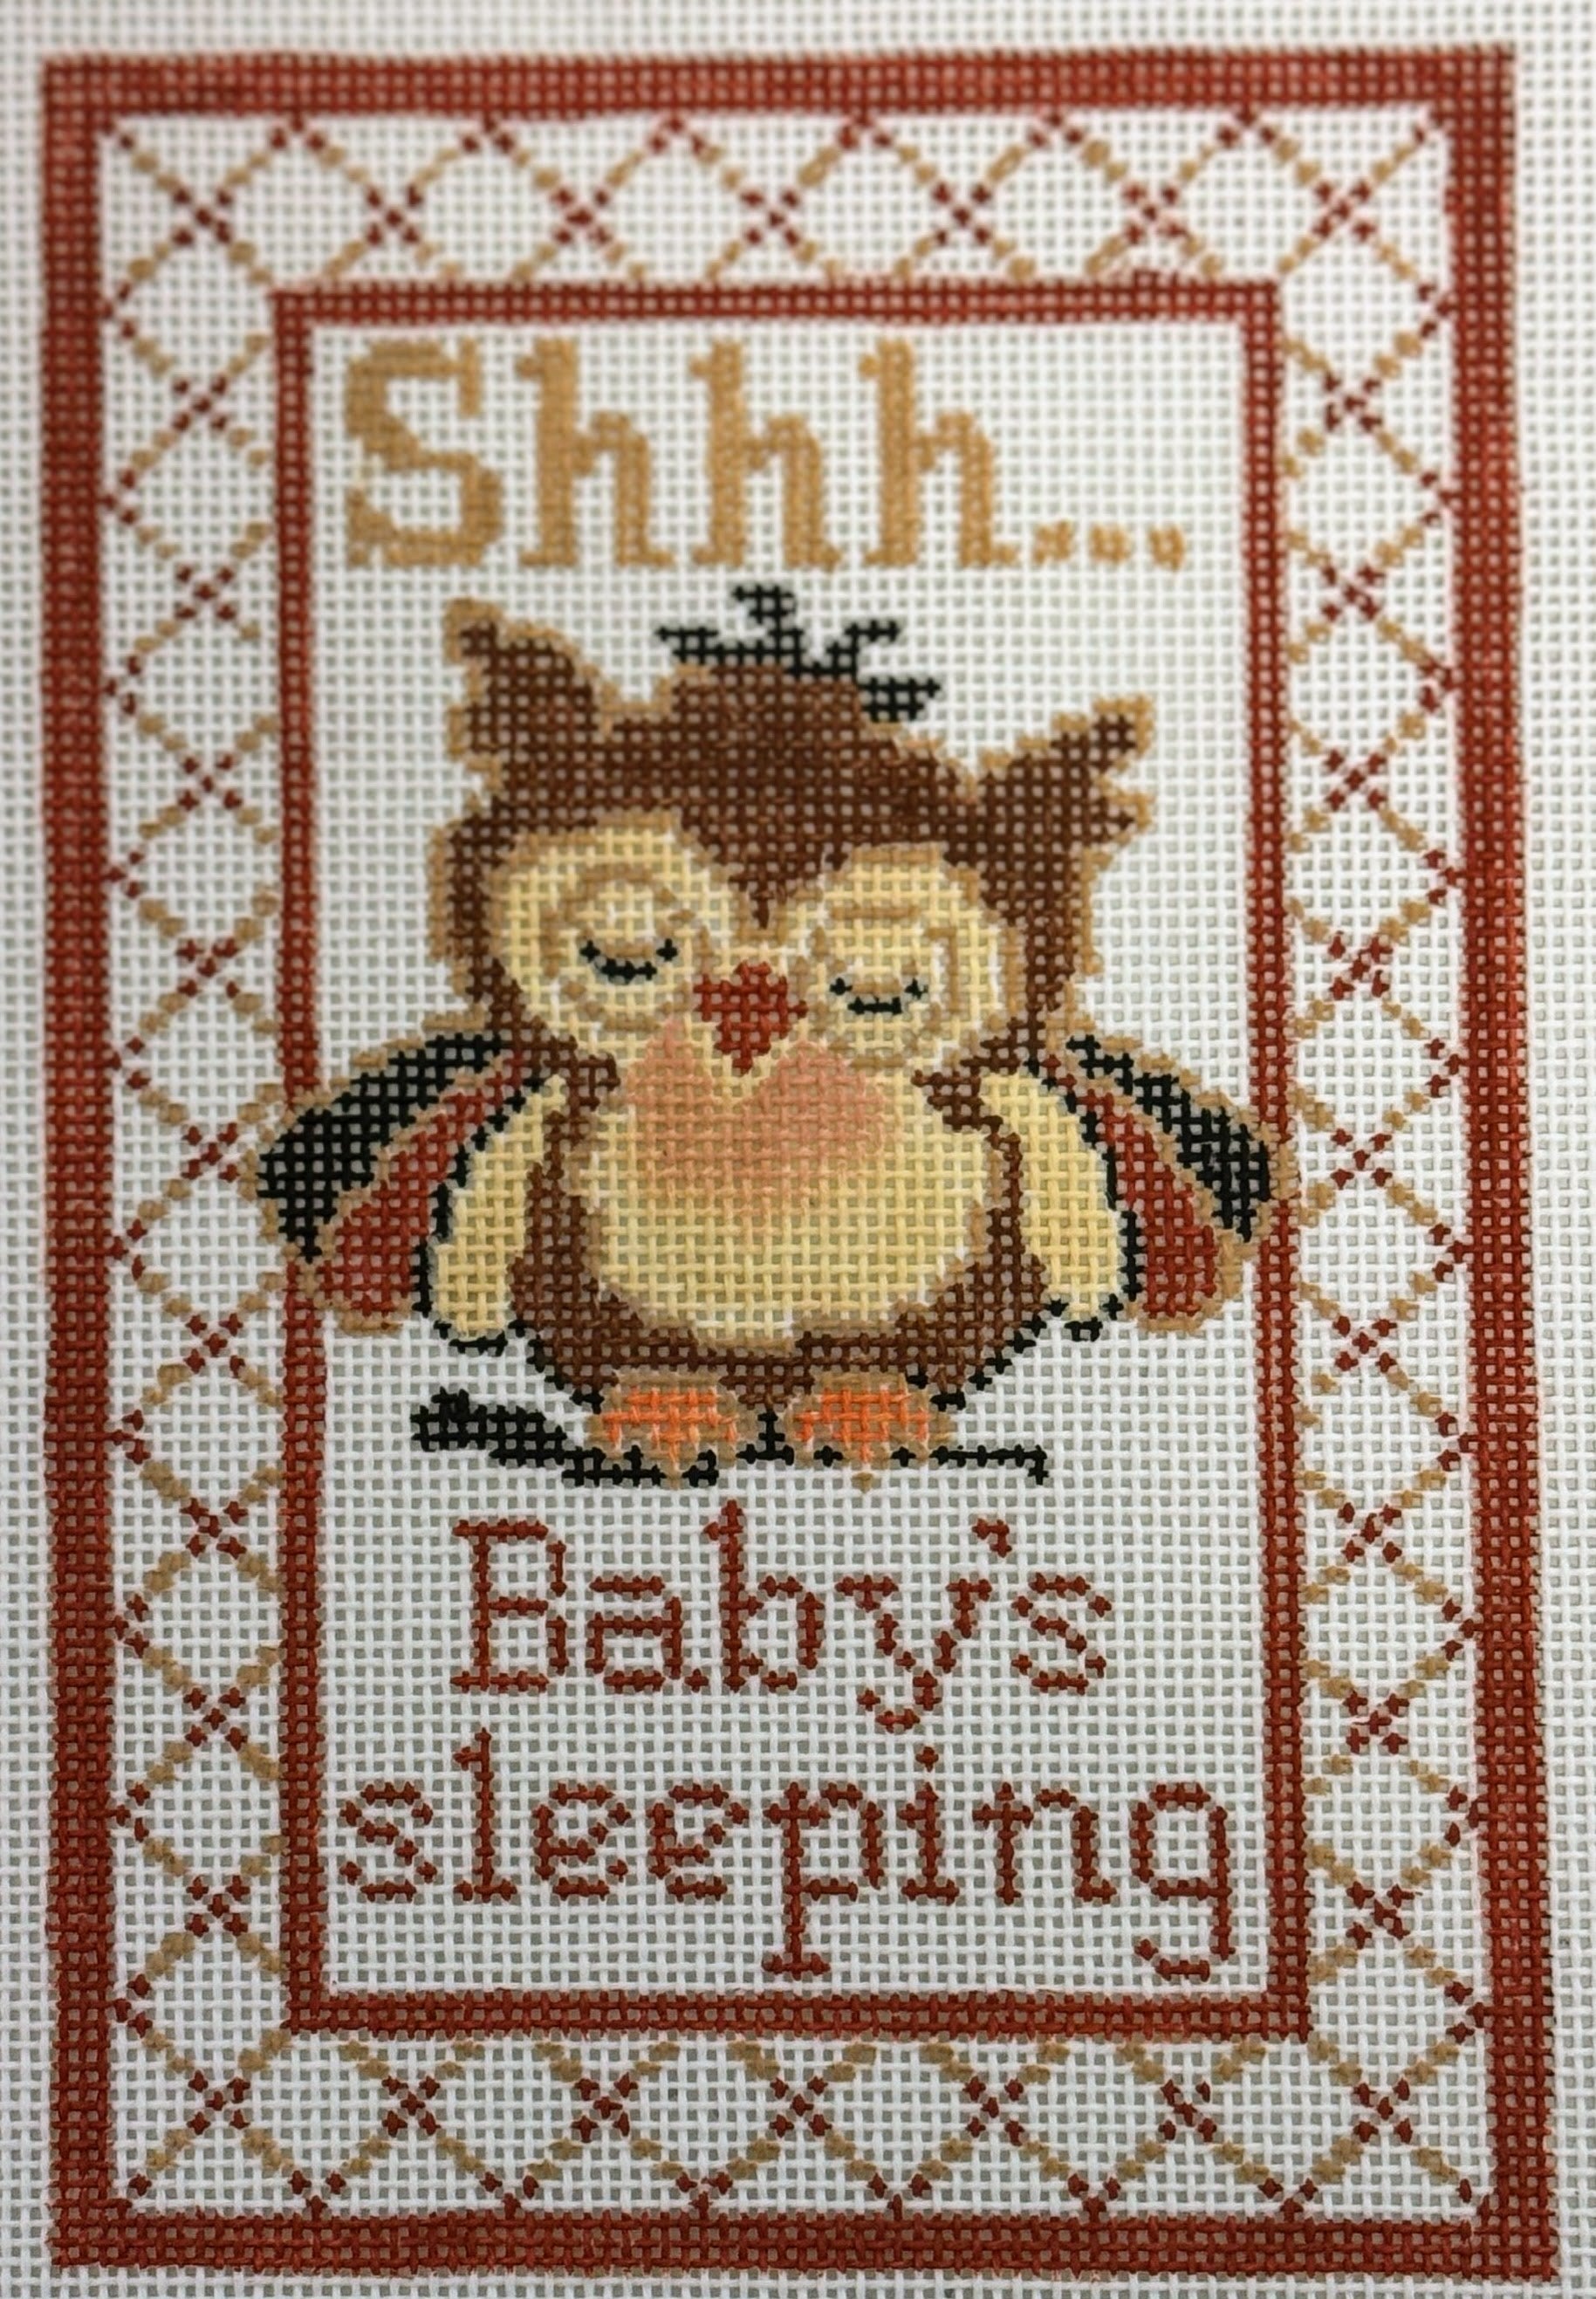 Baby Owl Sleeping - The Flying Needles